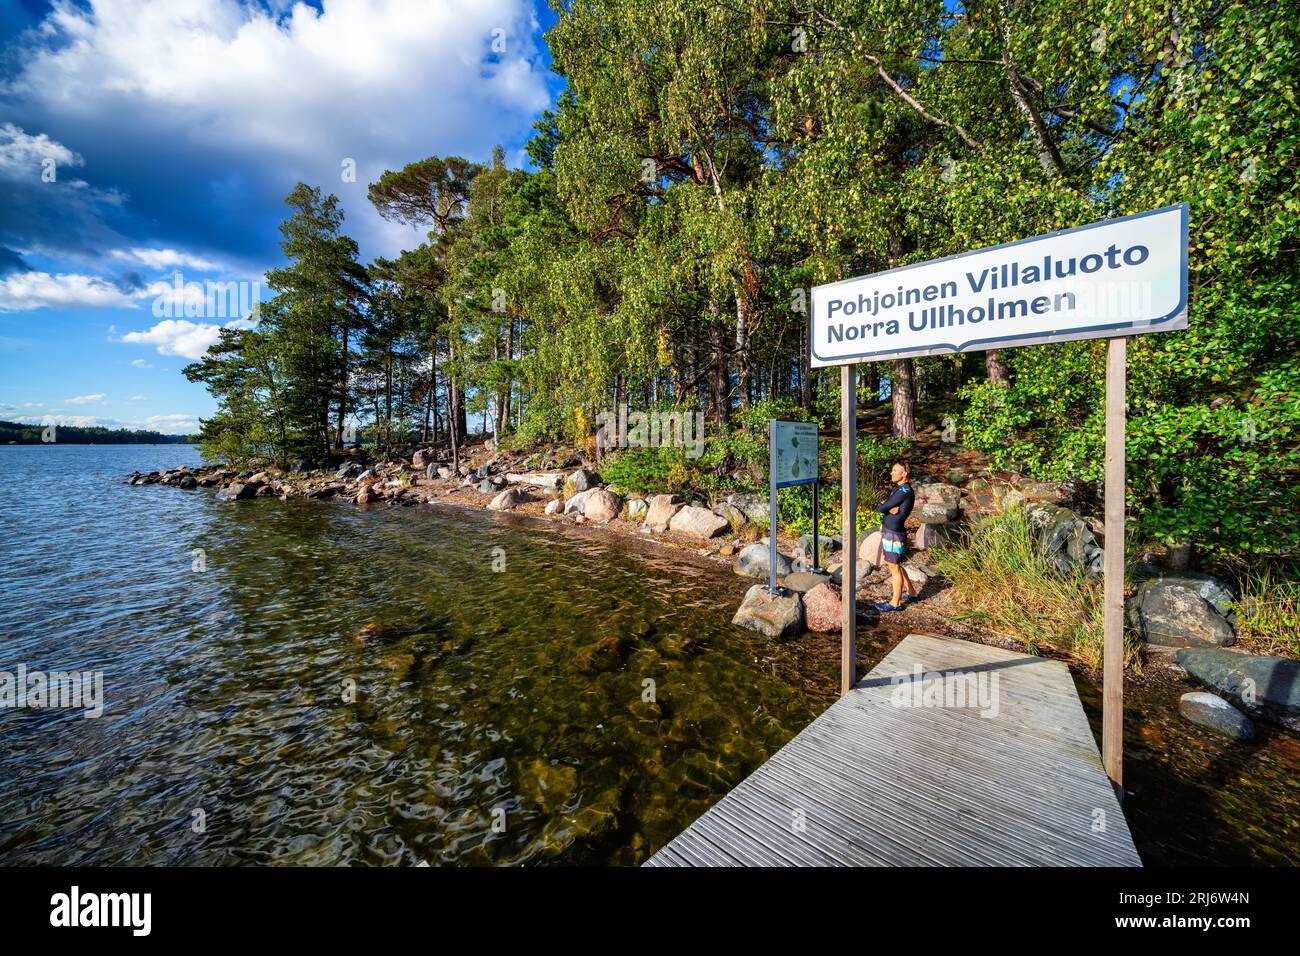 At Pohjoinen Villaluoto island in Helsinki, Finland Stock Photo